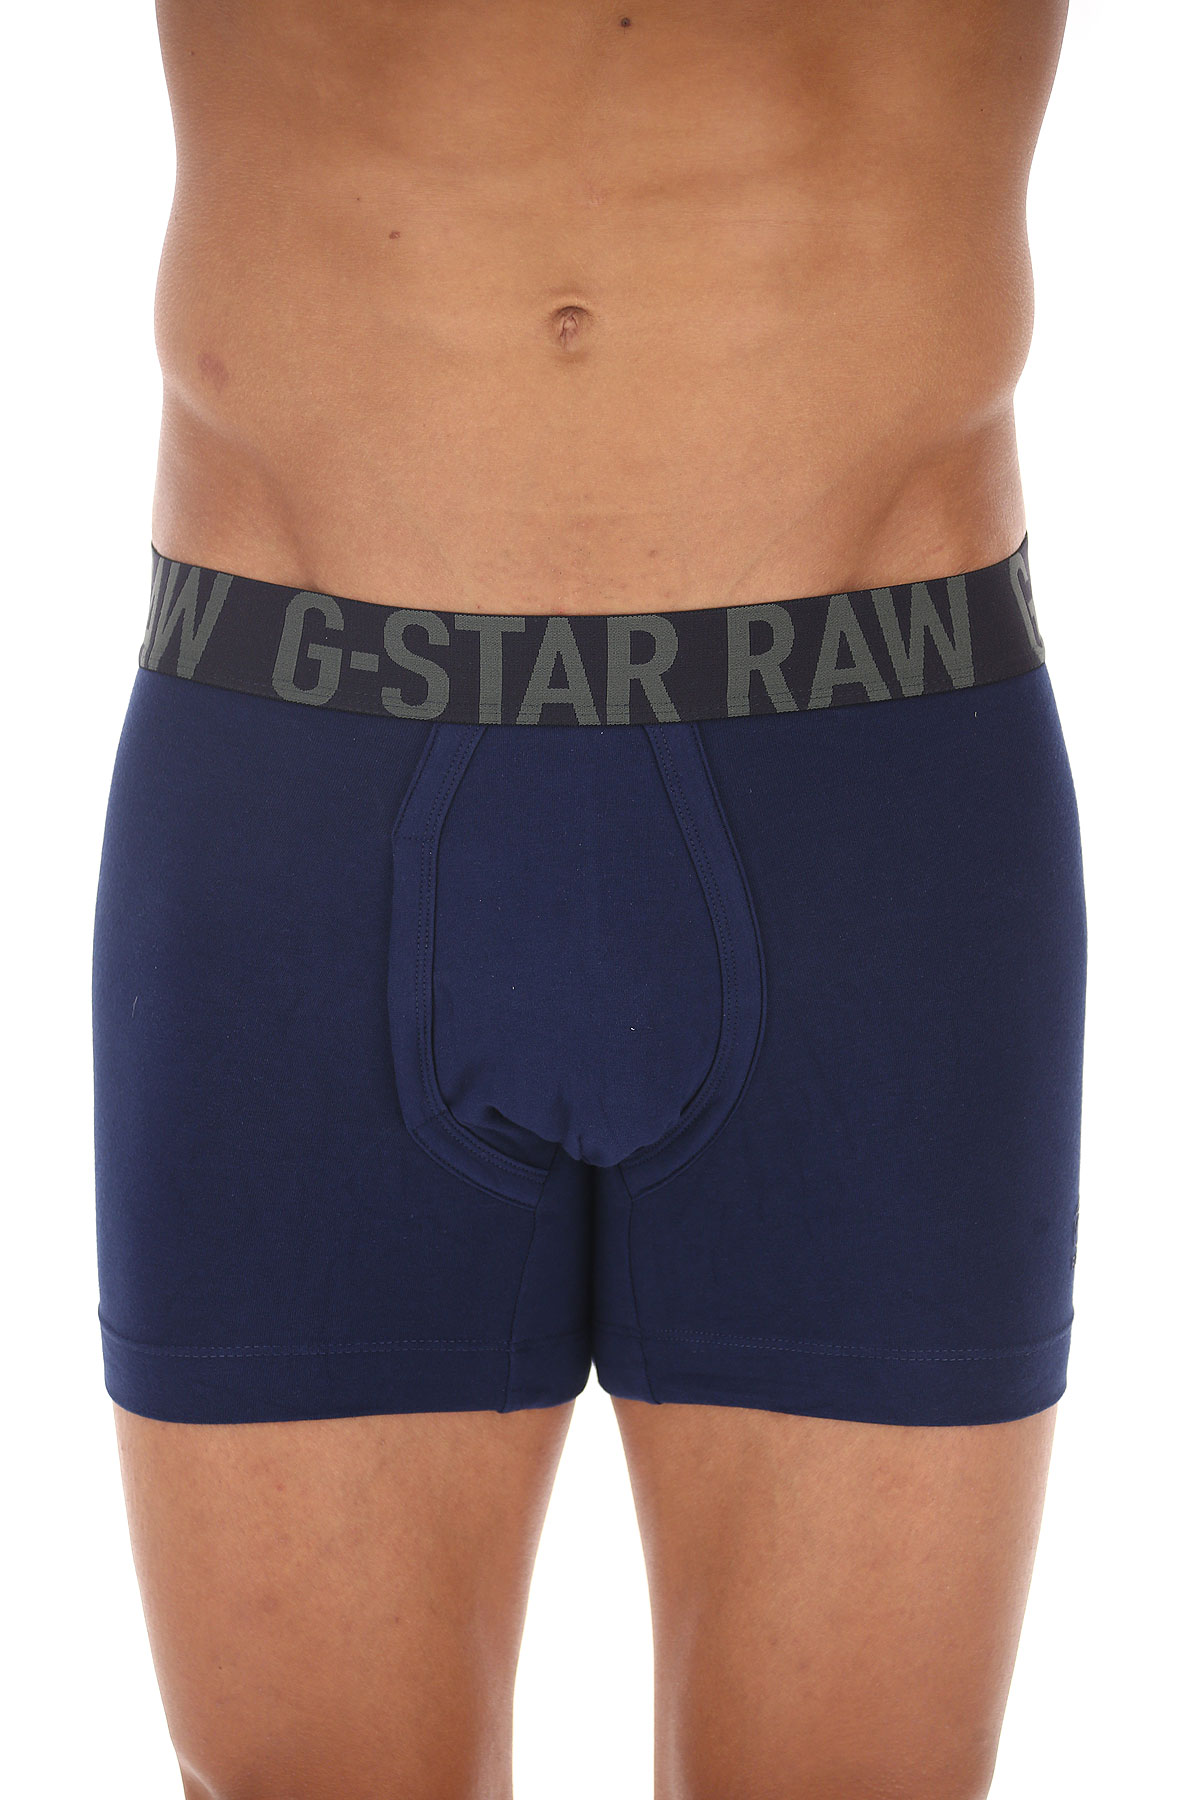 g star mens underwear